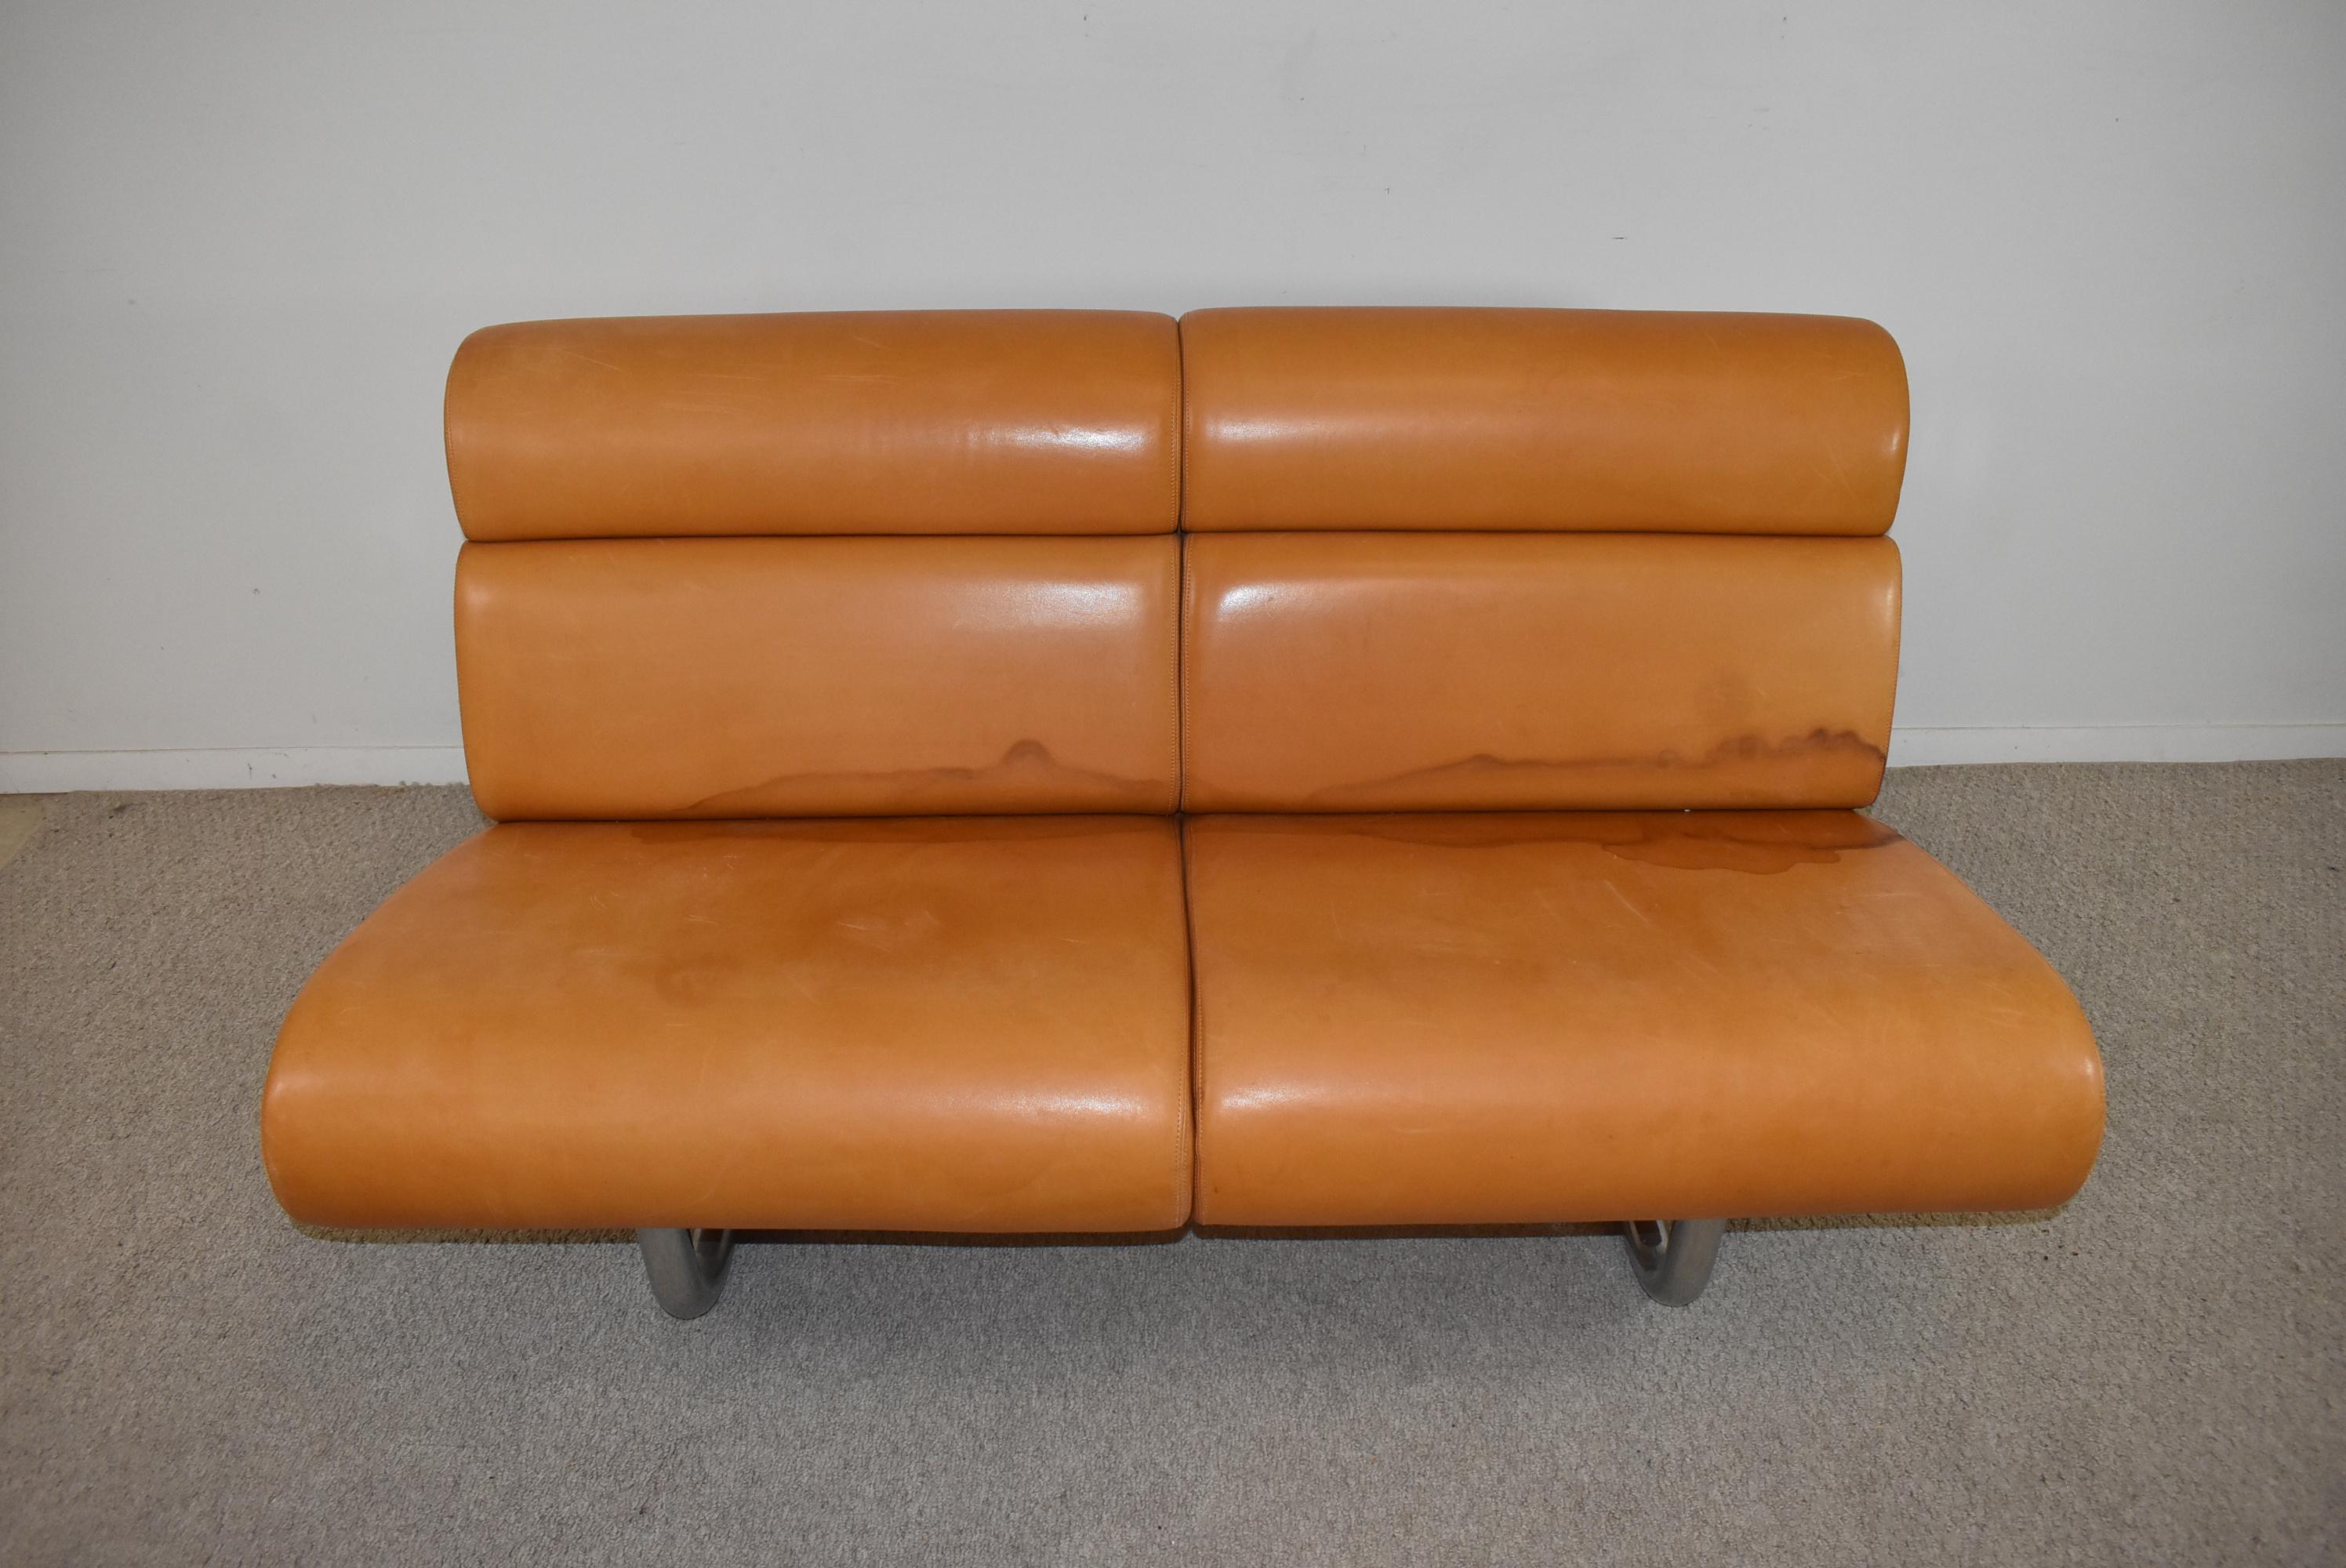 Dieses 1970 von Richard Schultz für Knoll entworfene Sofa hat eine ledergepolsterte Vorder- und Rückenlehne und besteht aus modularen Teilen, die an einem Stahlrohrrahmen hängen. 56